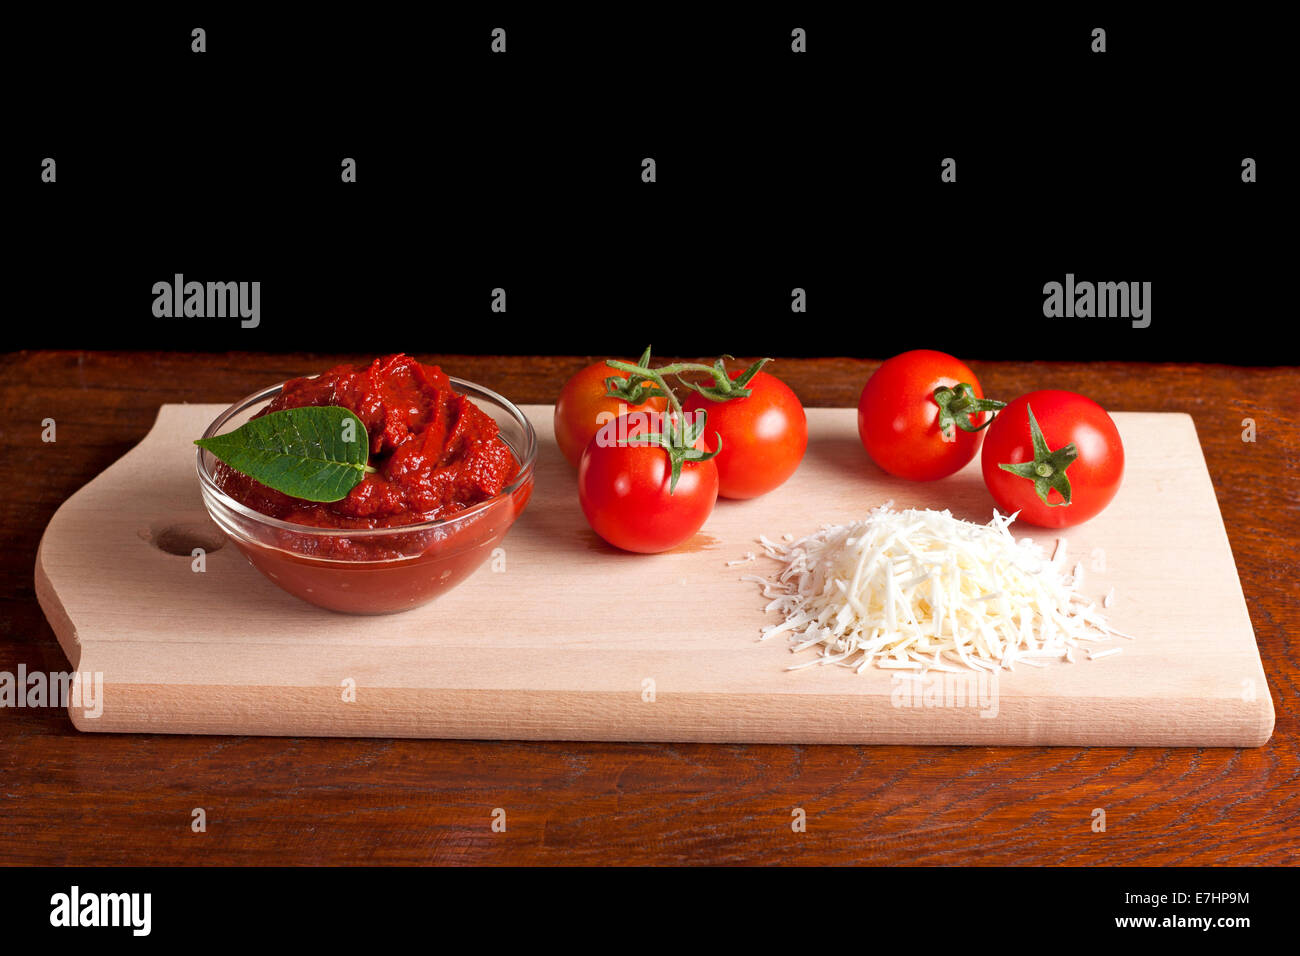 Il concentrato di pomodoro, formaggio grattugiato e alcuni pomodori su legno Foto Stock